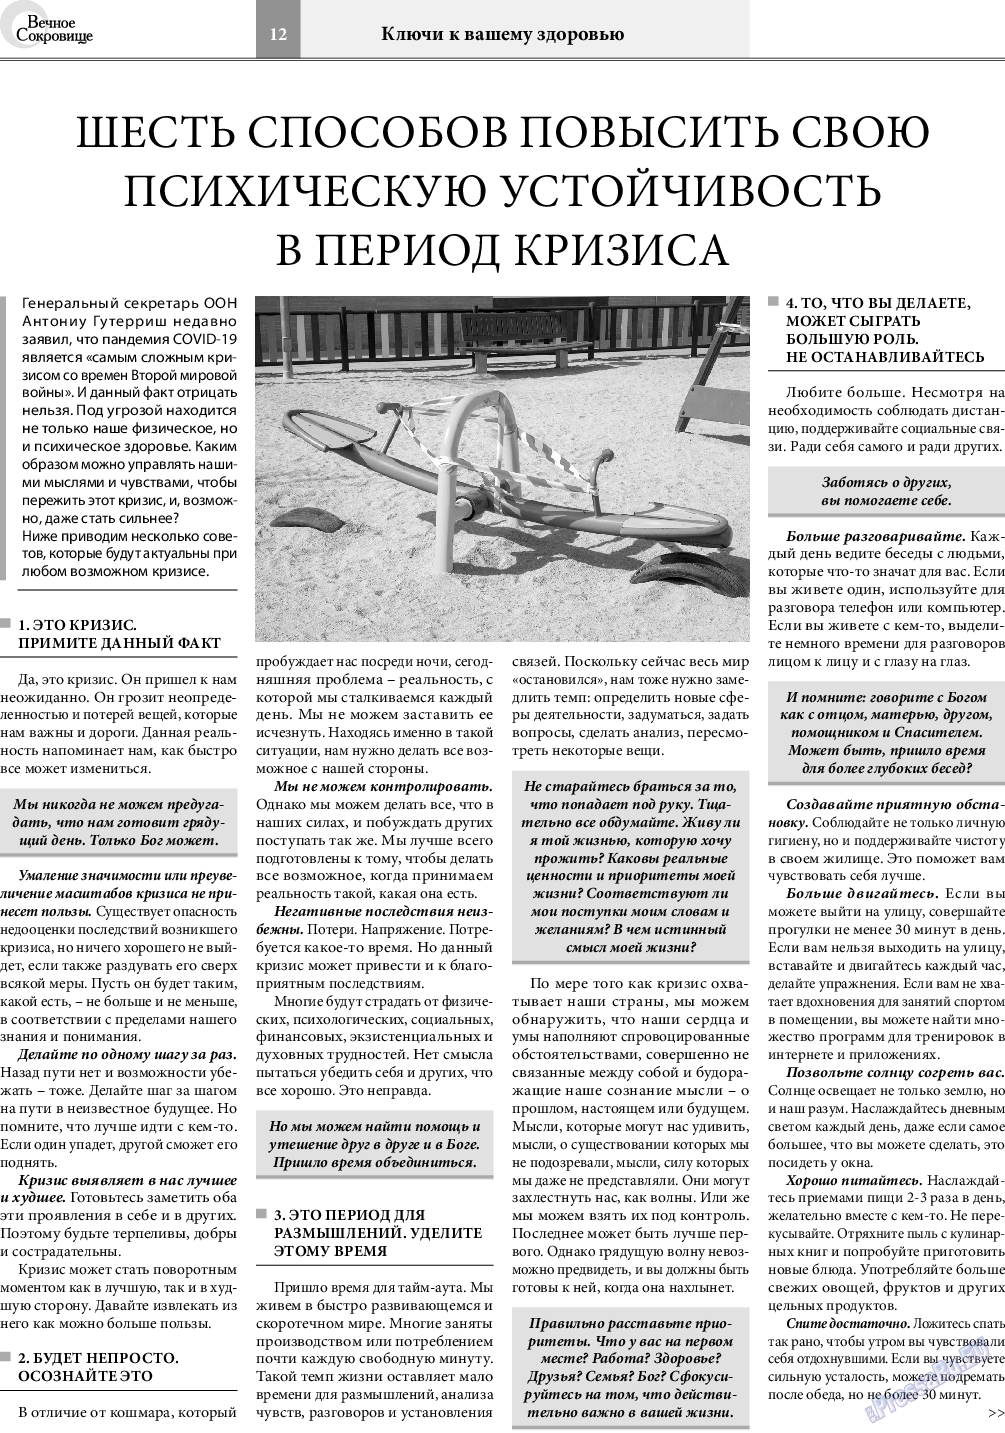 Вечное сокровище, газета. 2021 №1 стр.12